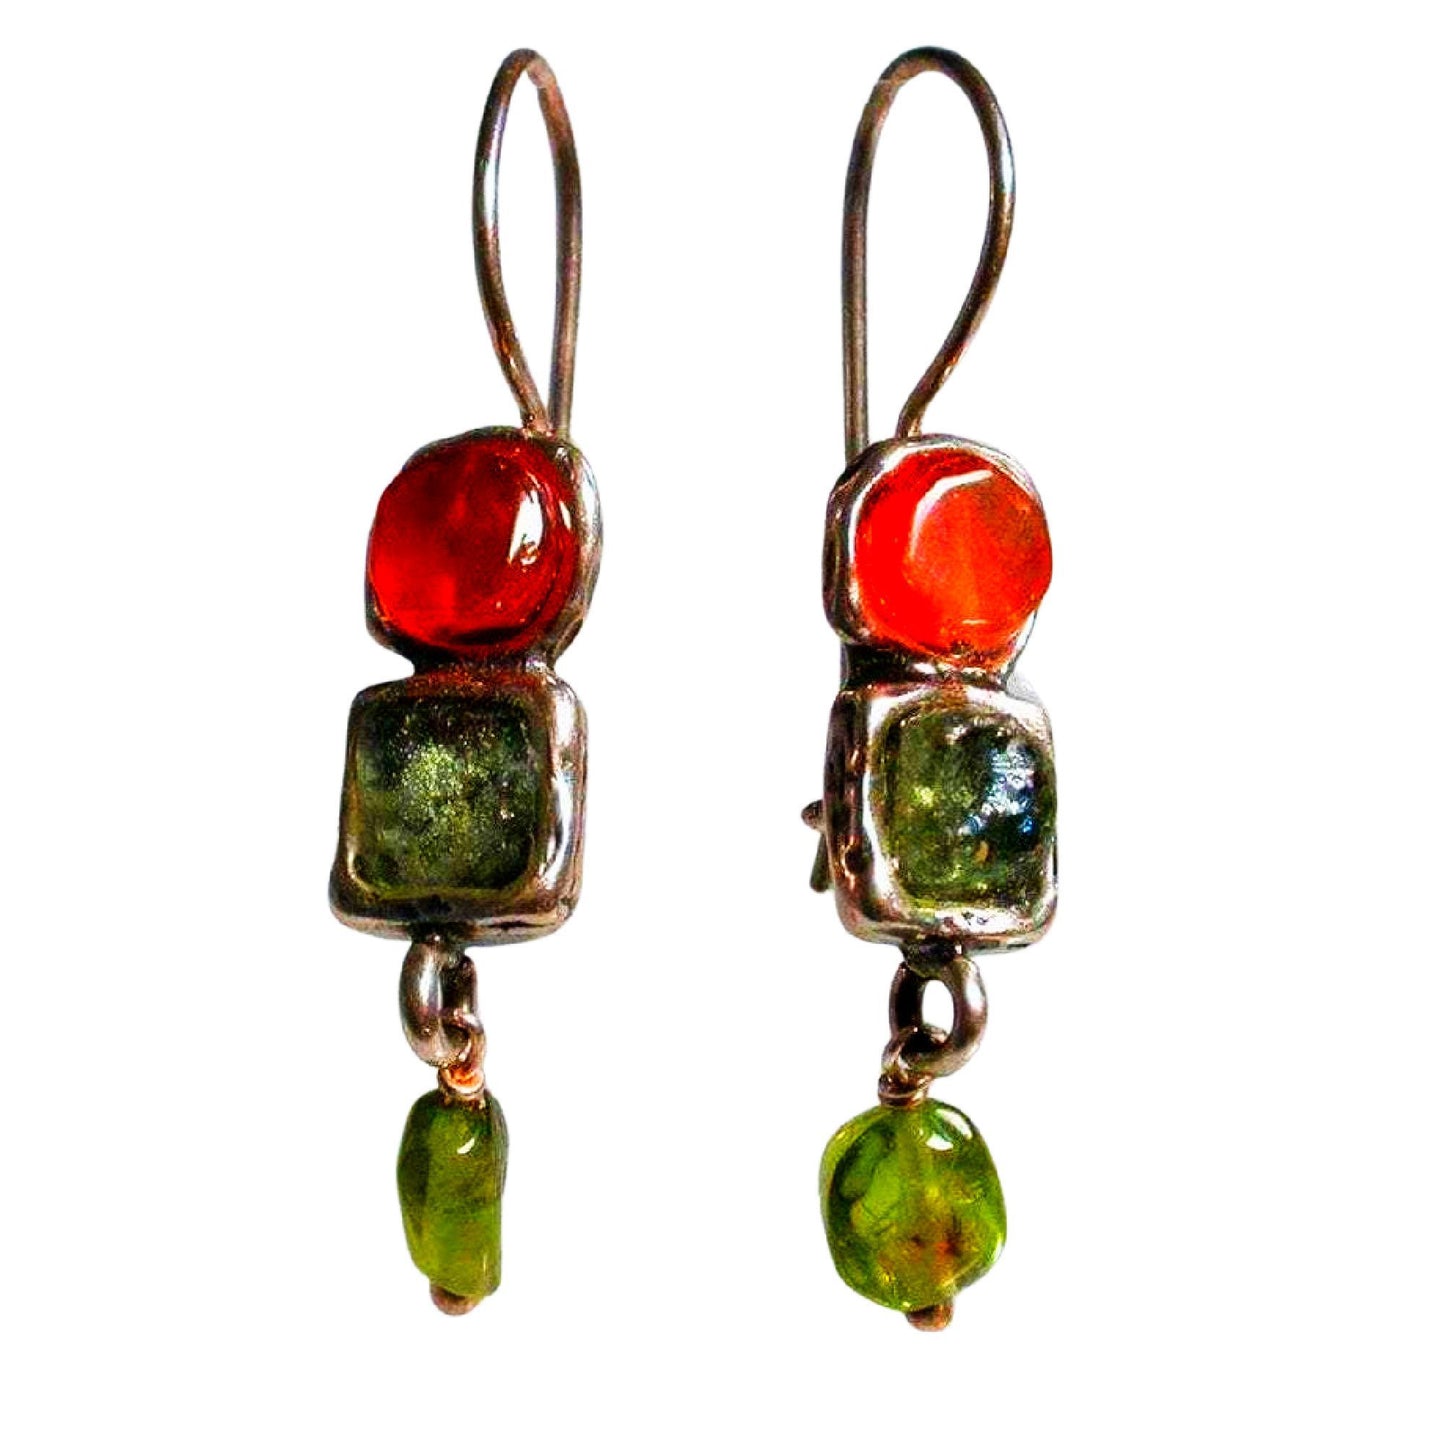 Bluenoemi Earrings Roman Glass silver pomegranate dangle earrings / red / dangling Sterling Silver Earrings, Roman Glass Earrings cornelian, Peridot